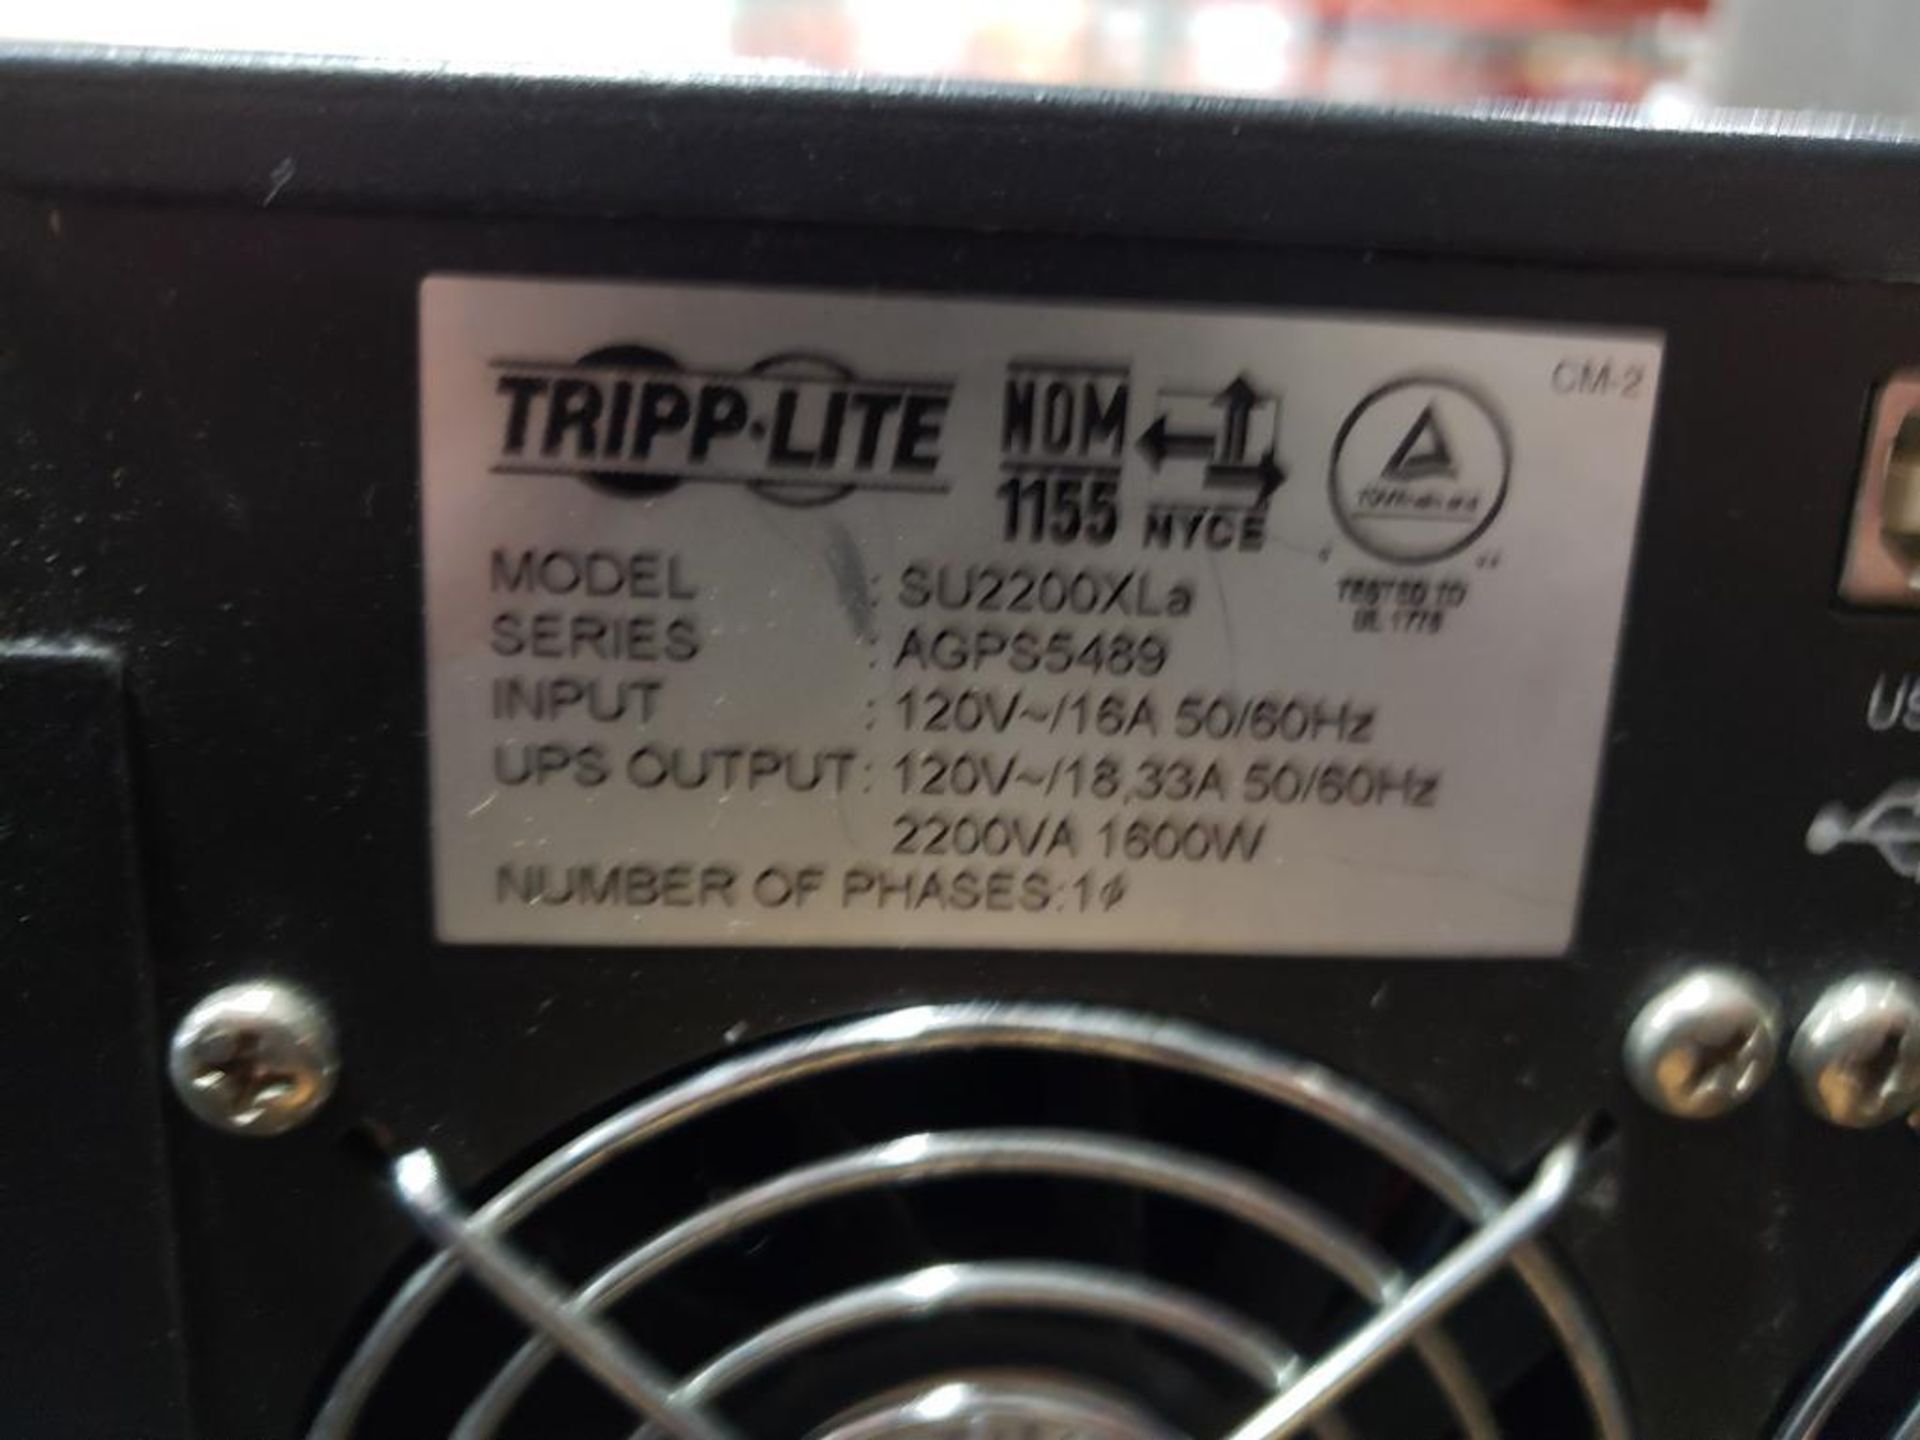 Tripp-Lite SU2200XLa smart online tower power supply. - Image 6 of 6